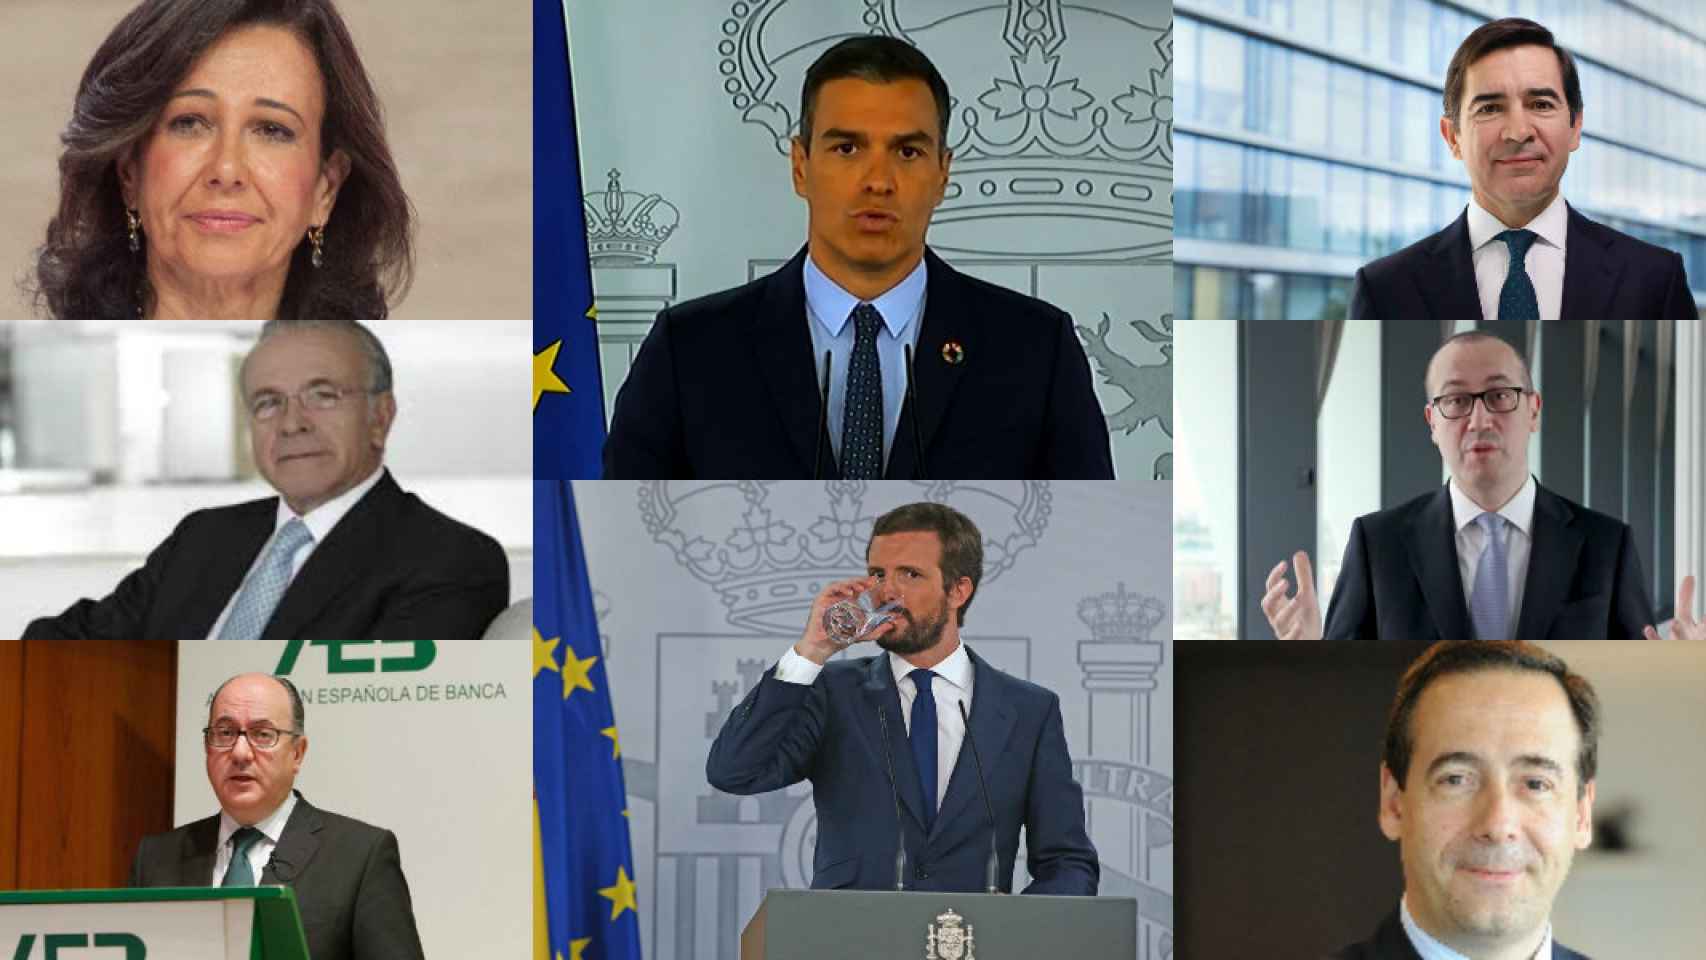 Ana Botín, Pedro Sánchez, Carlos Torres, Isidro Fainé, Onur Genç, José María Roldán, Pablo Casado y Gonzalo Gortázar.